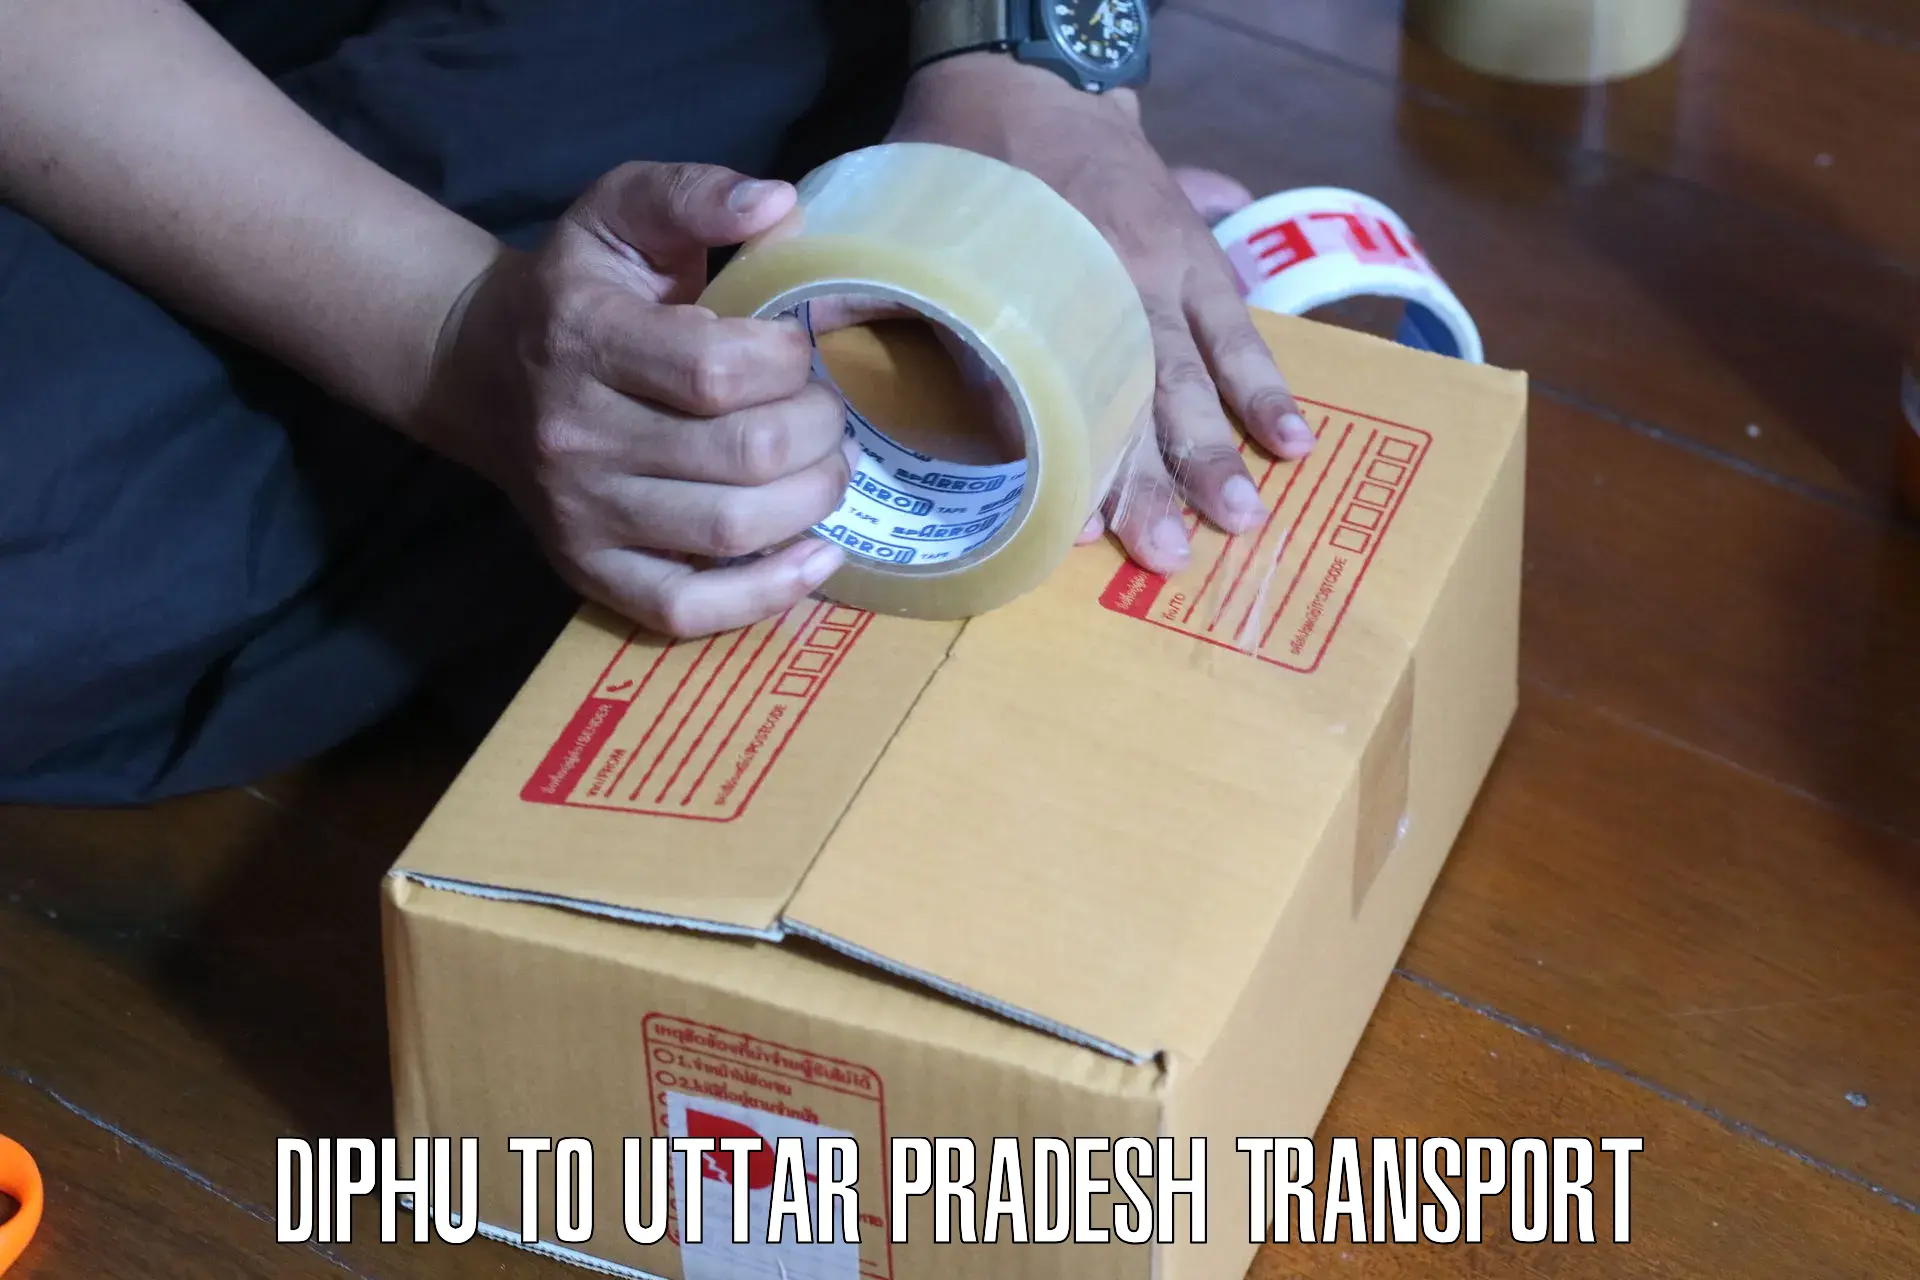 Nationwide transport services Diphu to Prayagraj